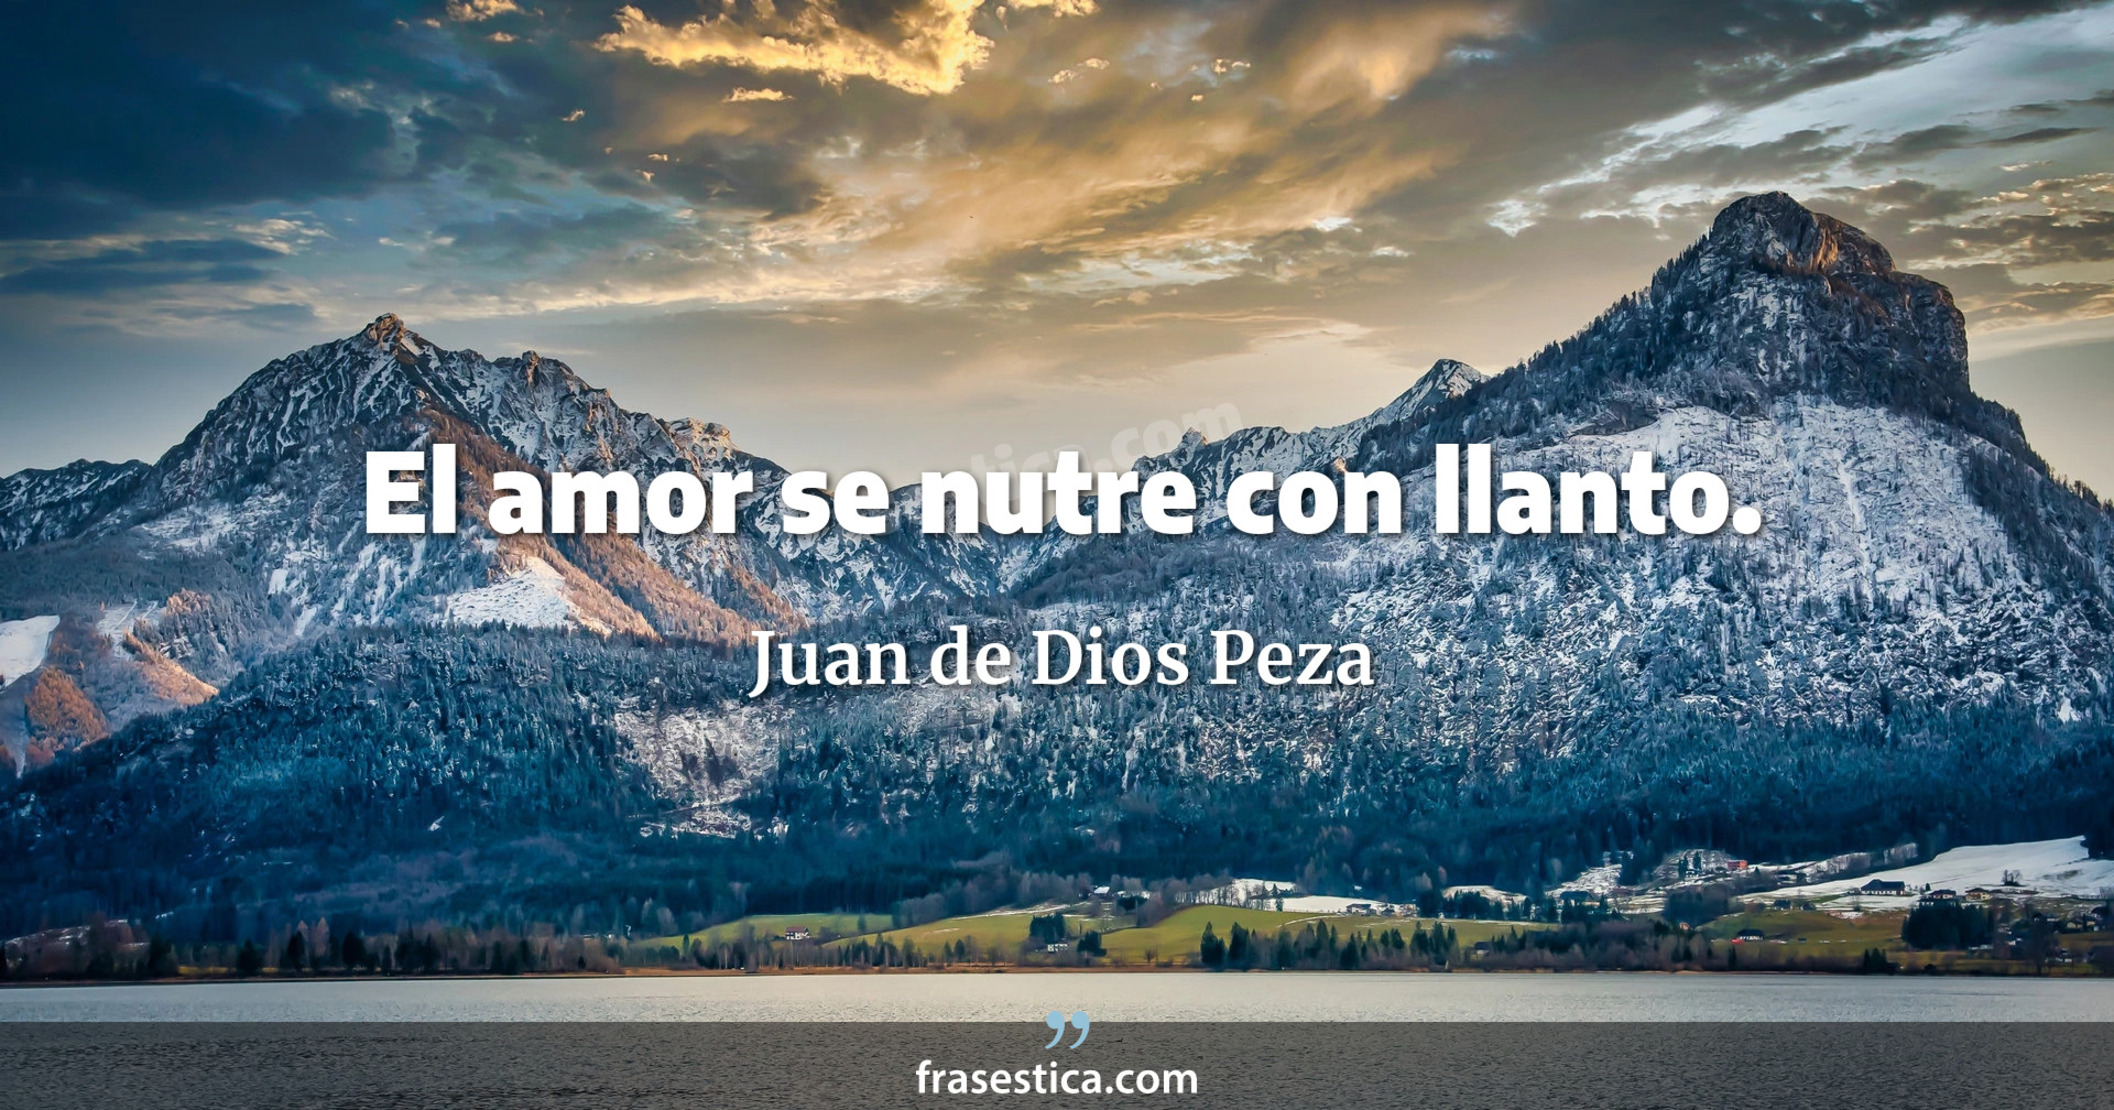 El amor se nutre con llanto. - Juan de Dios Peza